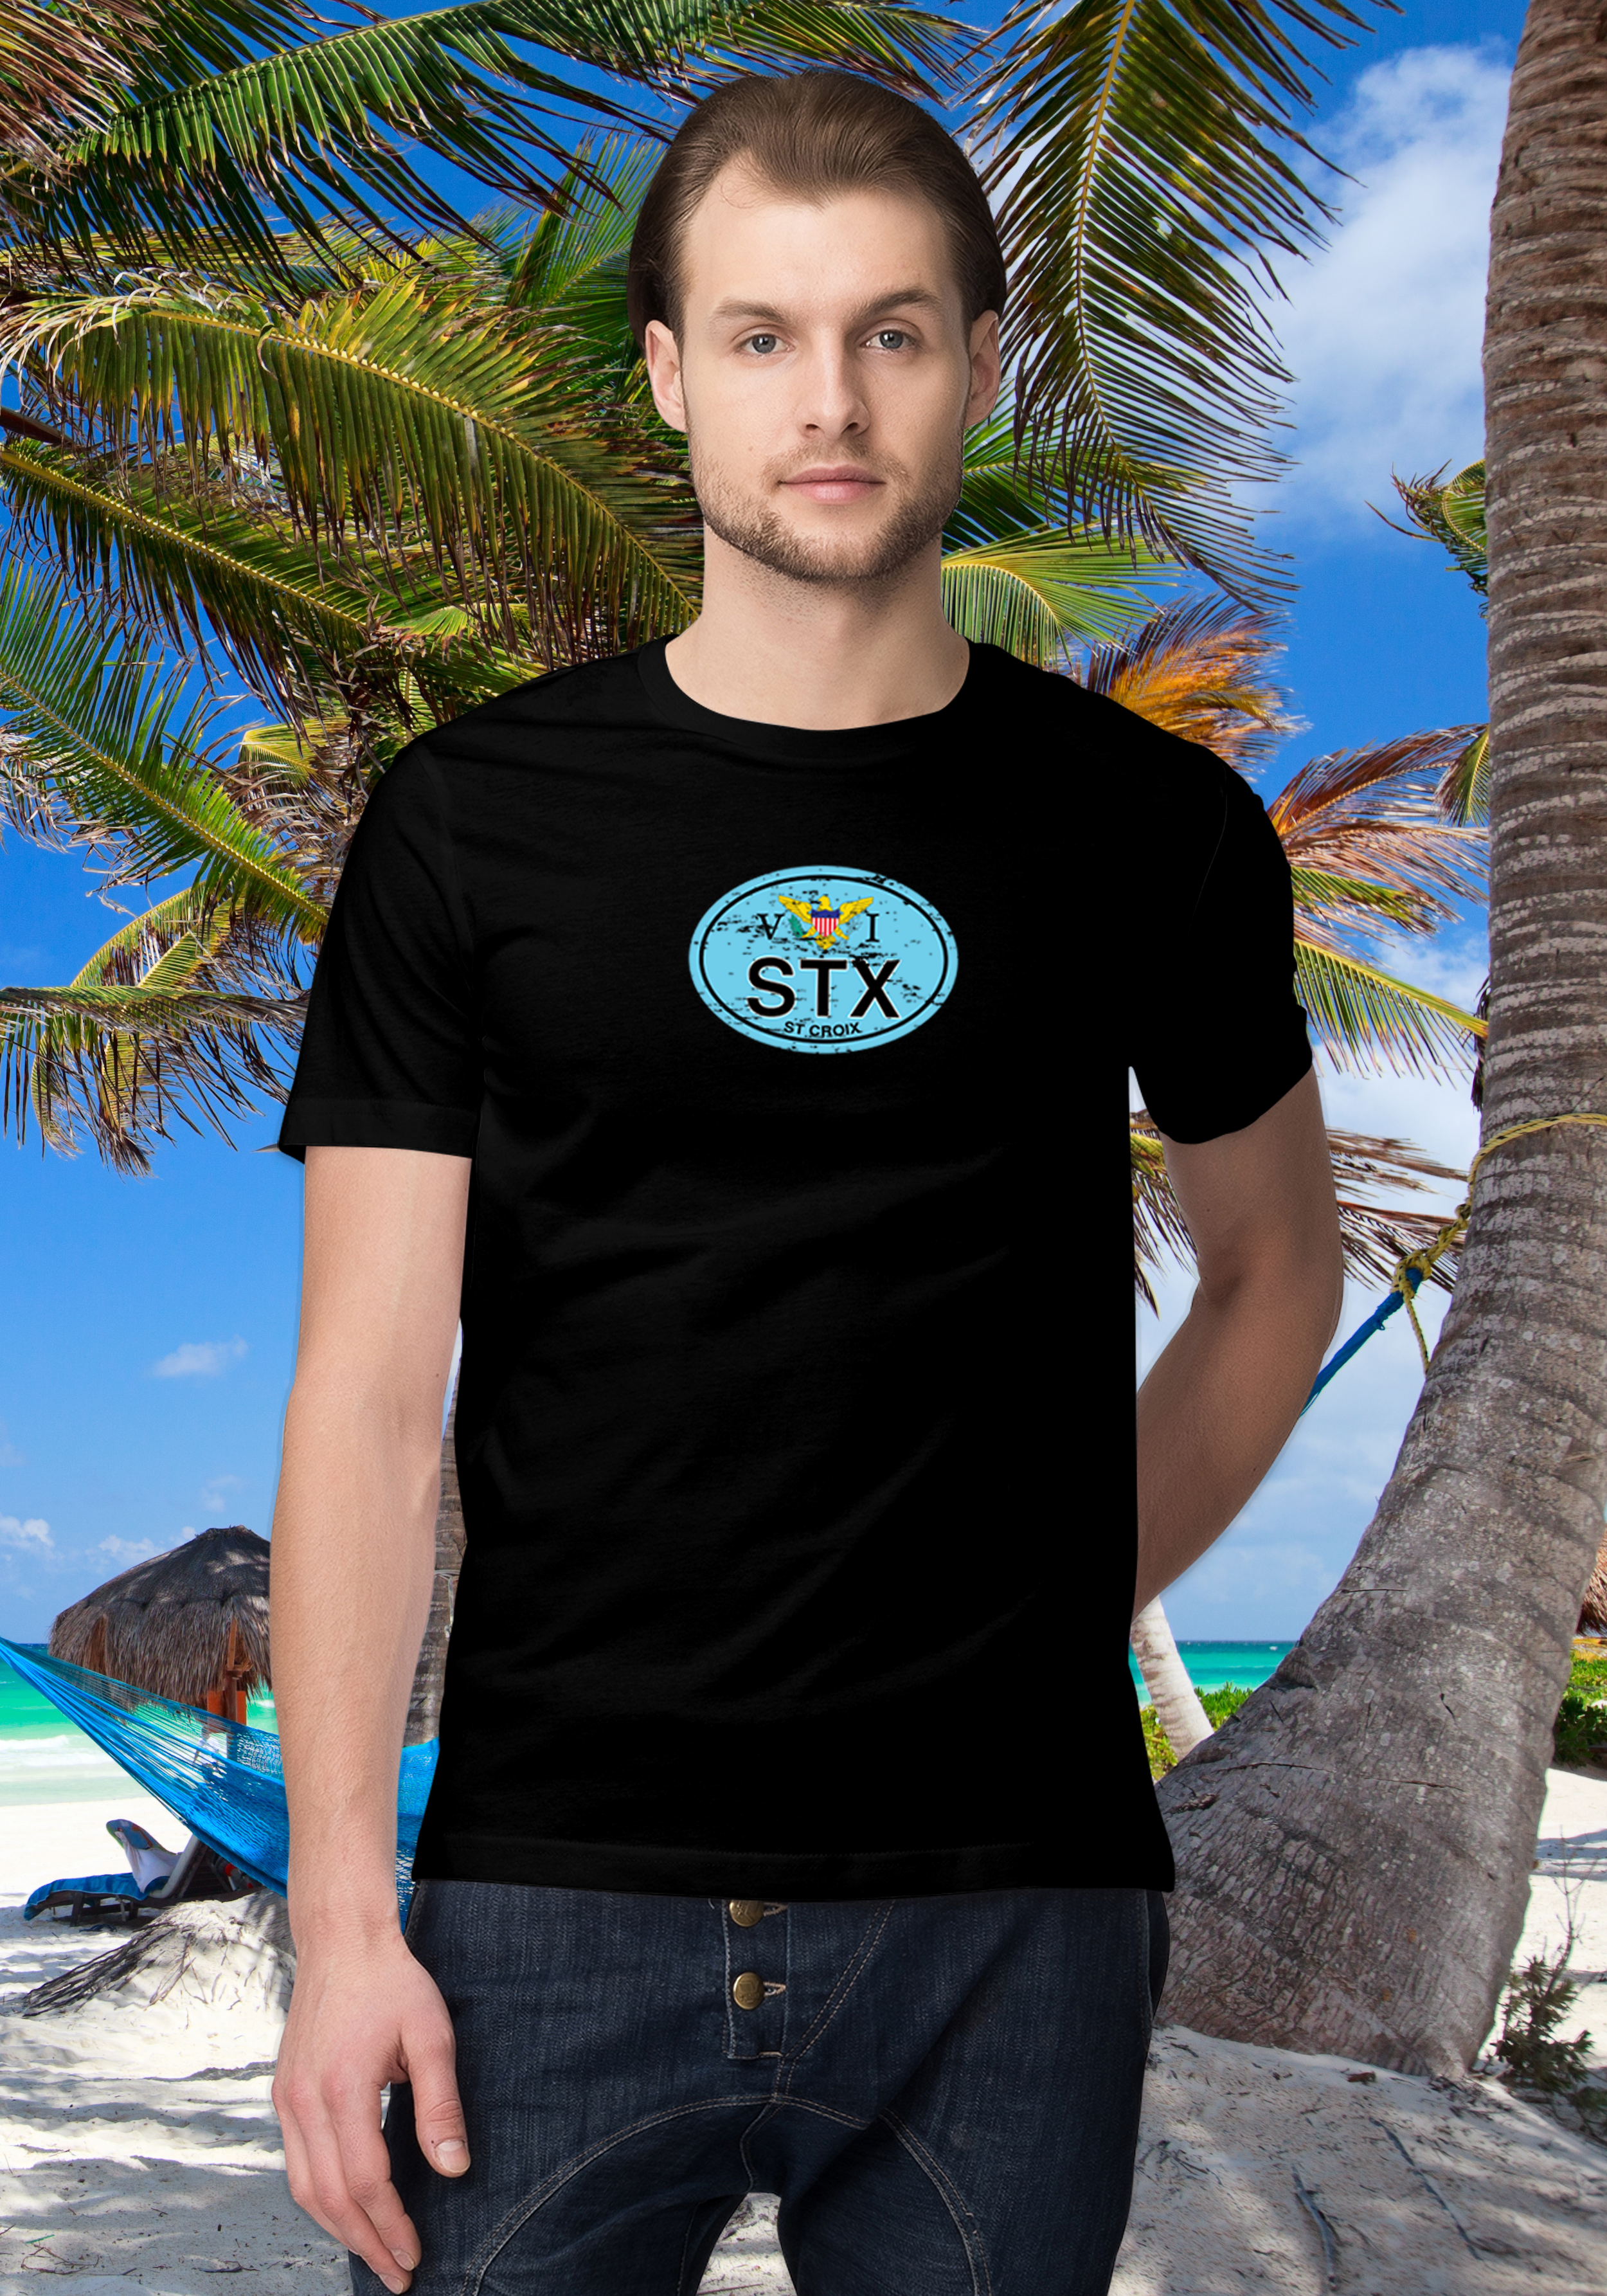 St Croix Men's Flag T-Shirt Souvenirs - My Destination Location